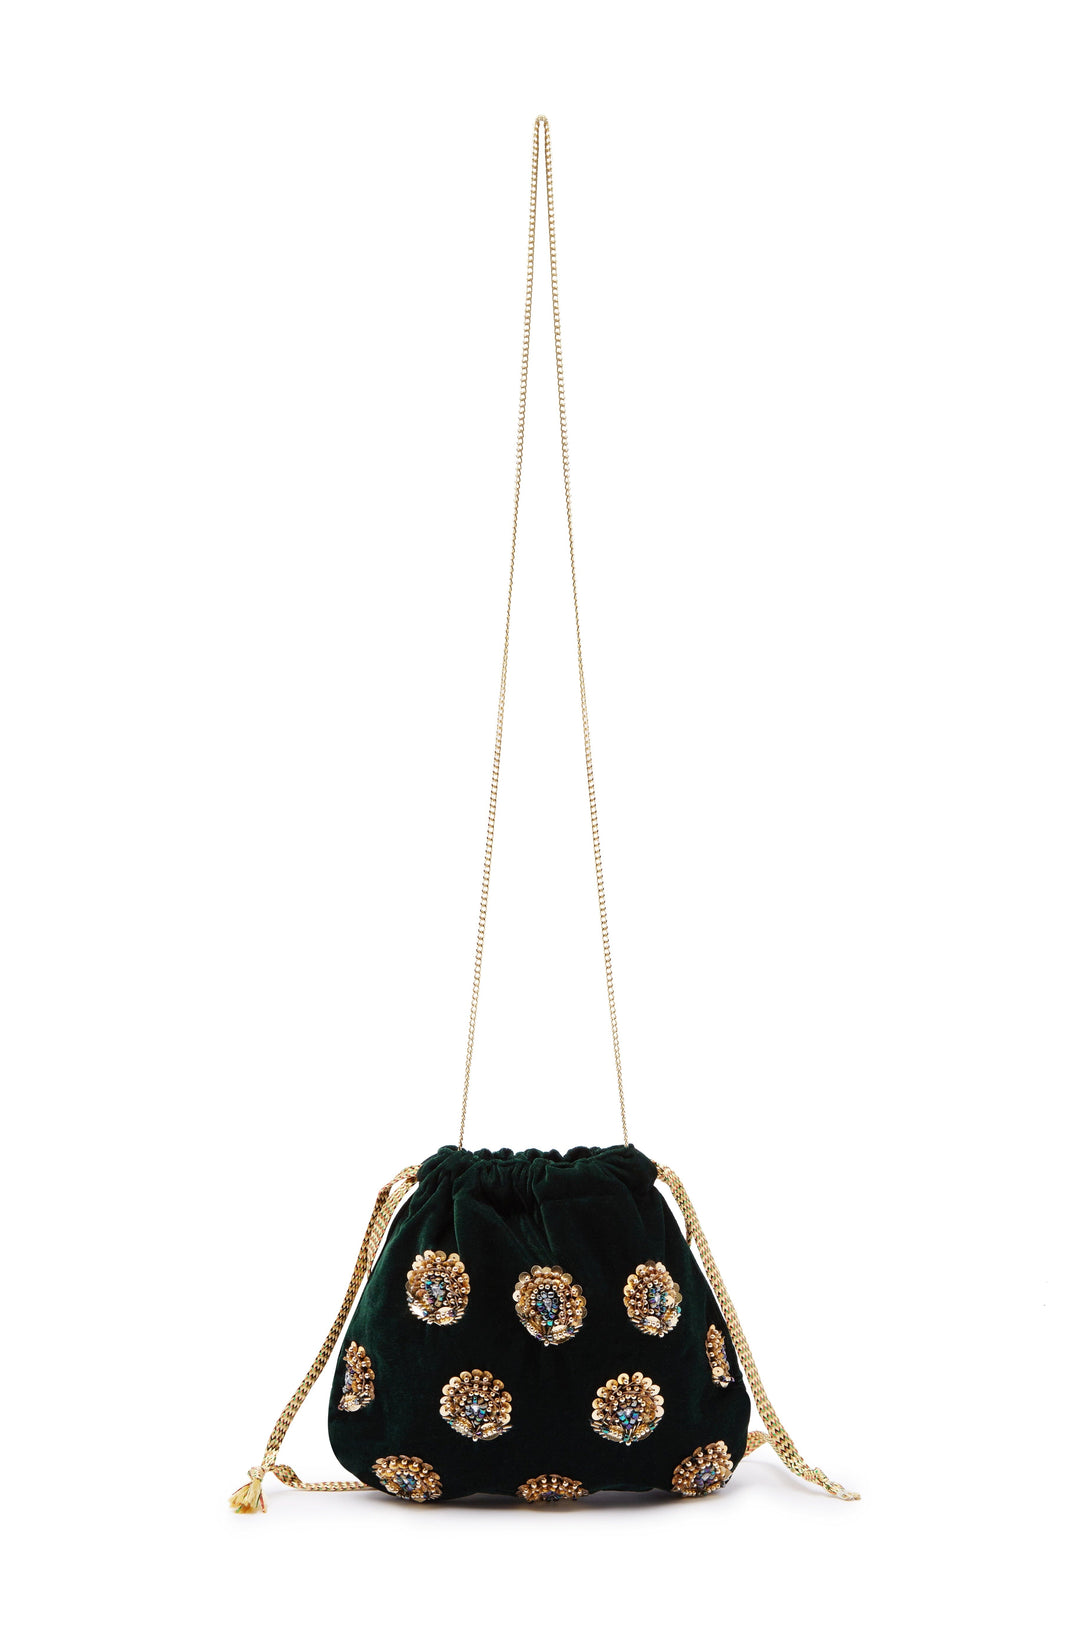 Rhiannon Velvet Drawstring Bag Forest Green Seasonal Handbag